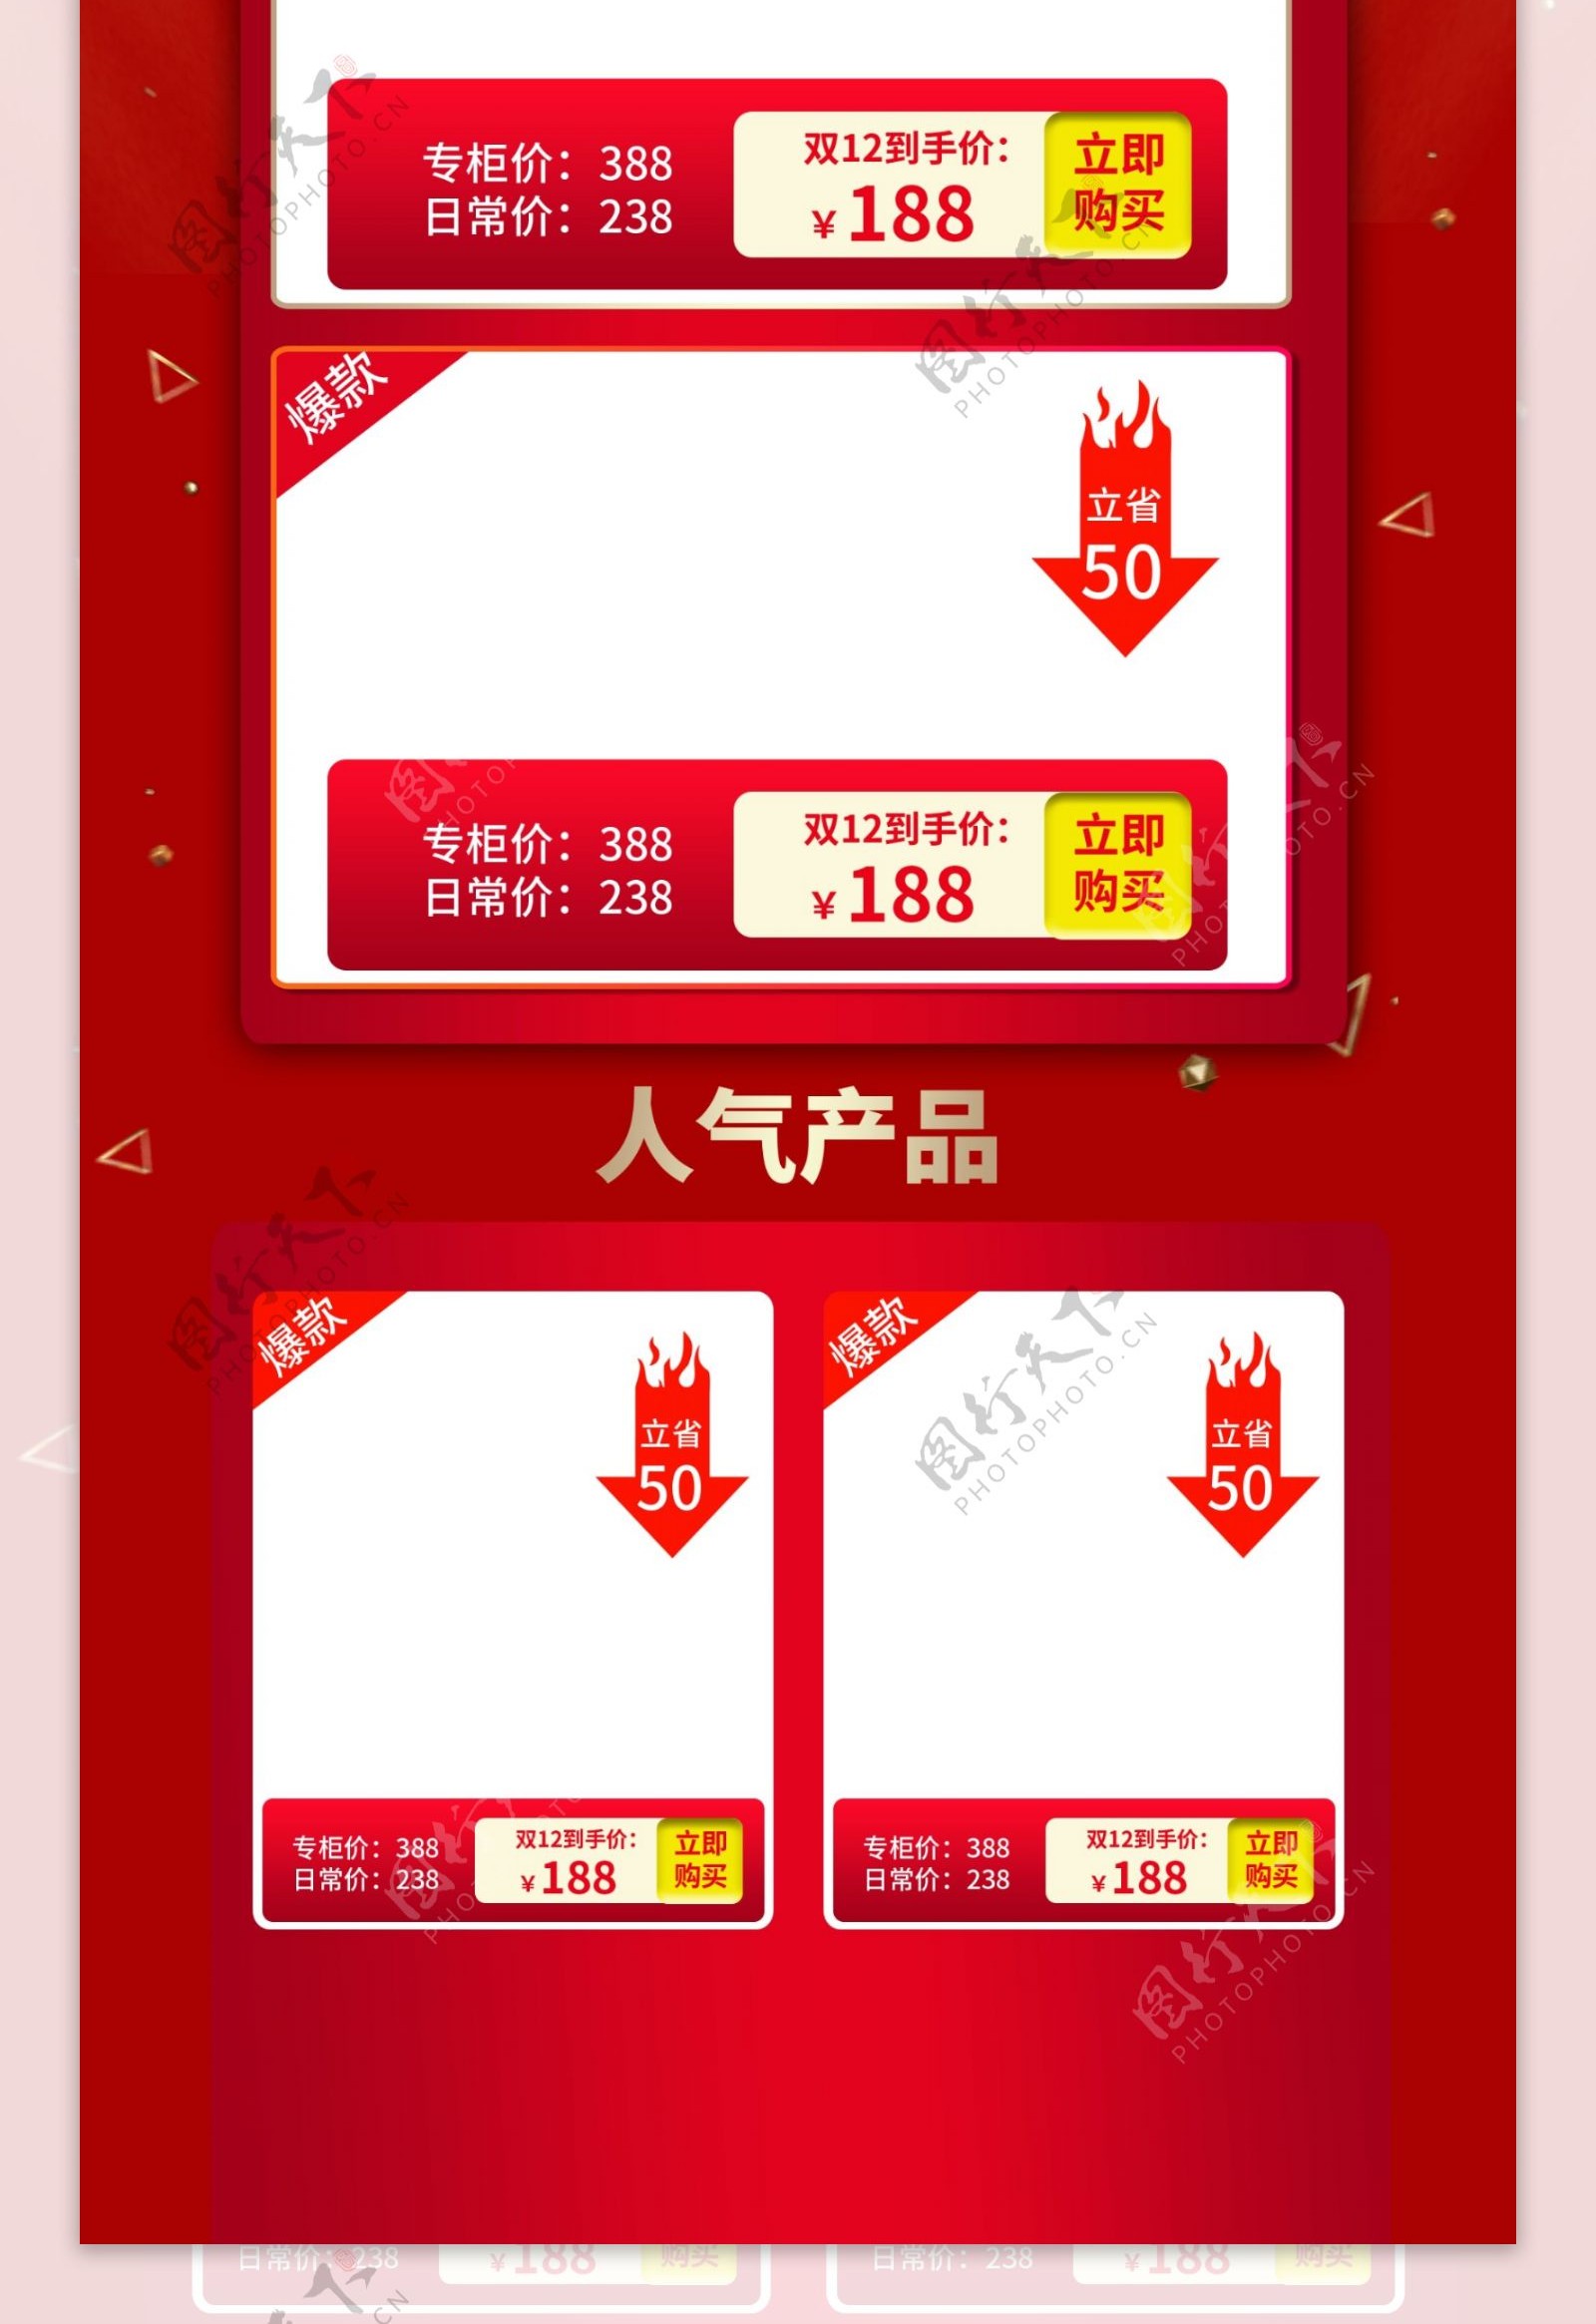 双12红色喜庆年终盛典淘宝首页模板